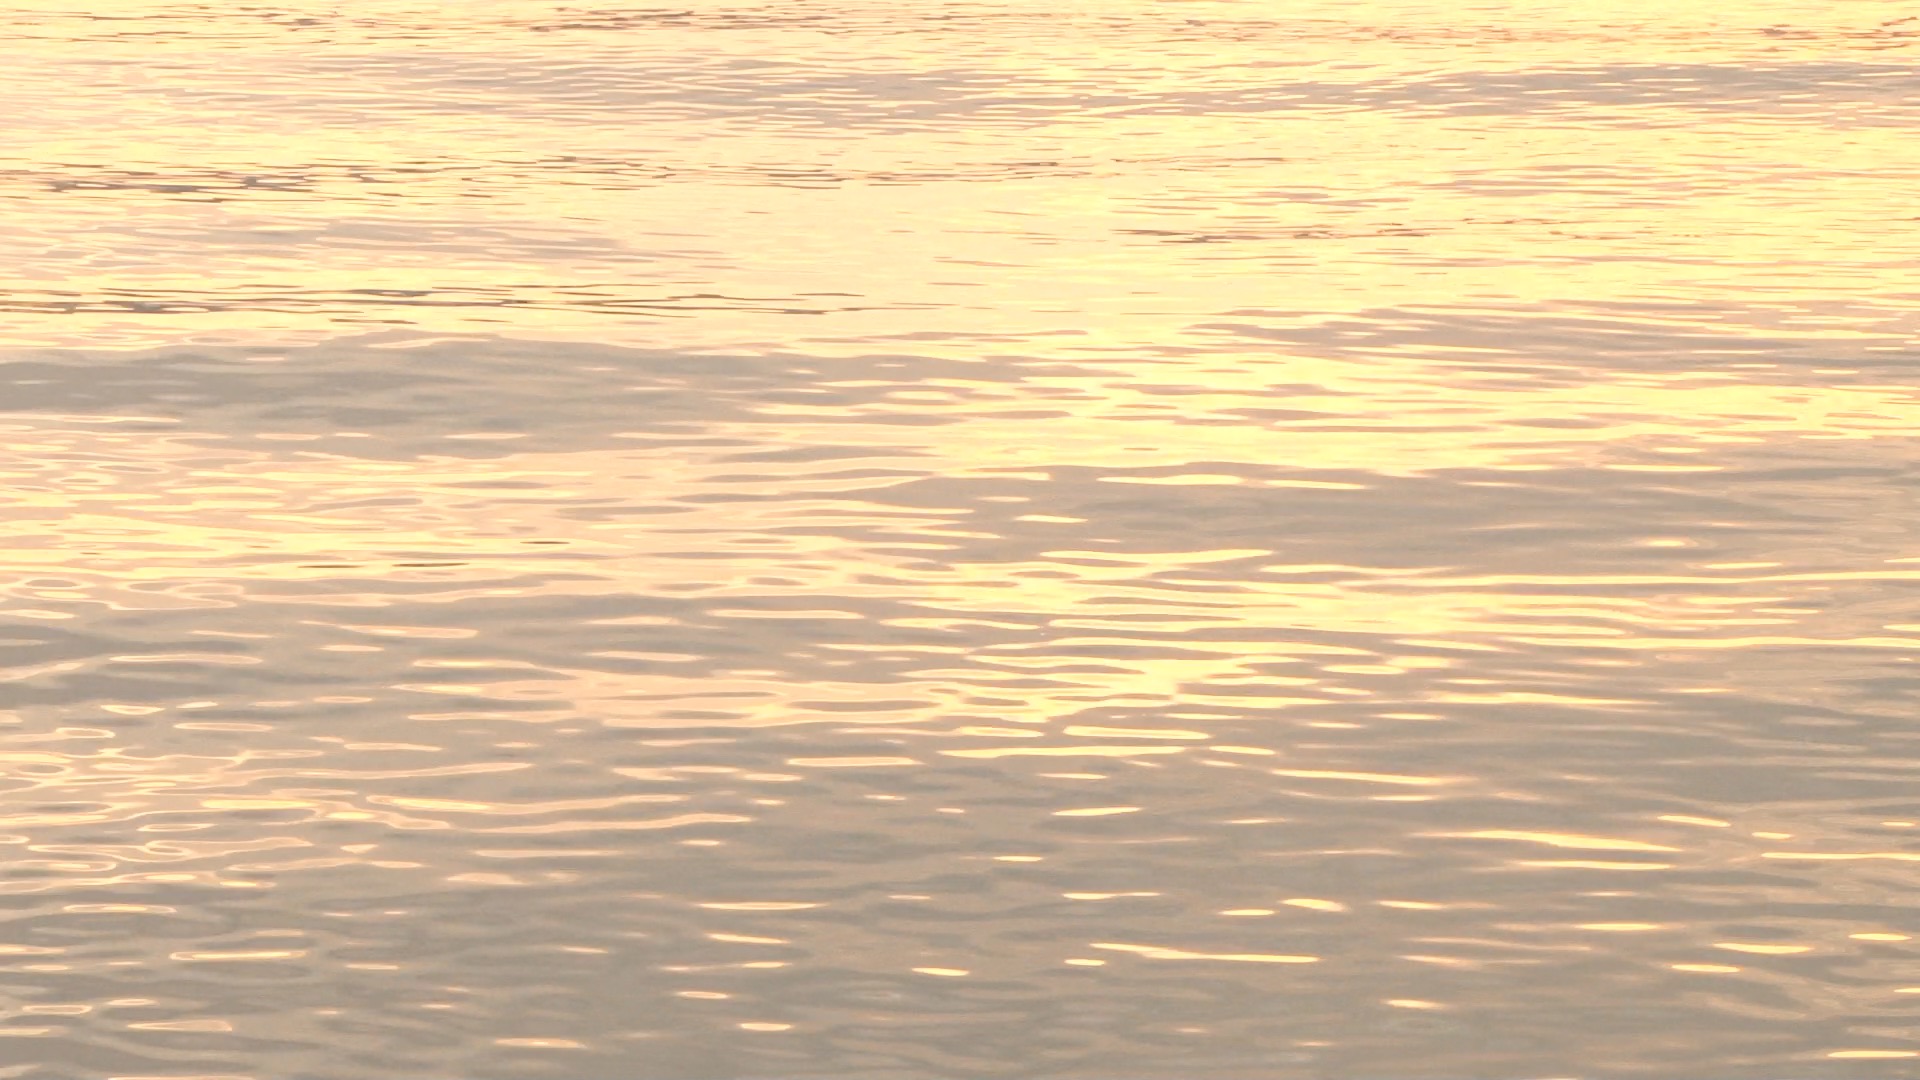 夕焼けの川面を撮影した動画素材